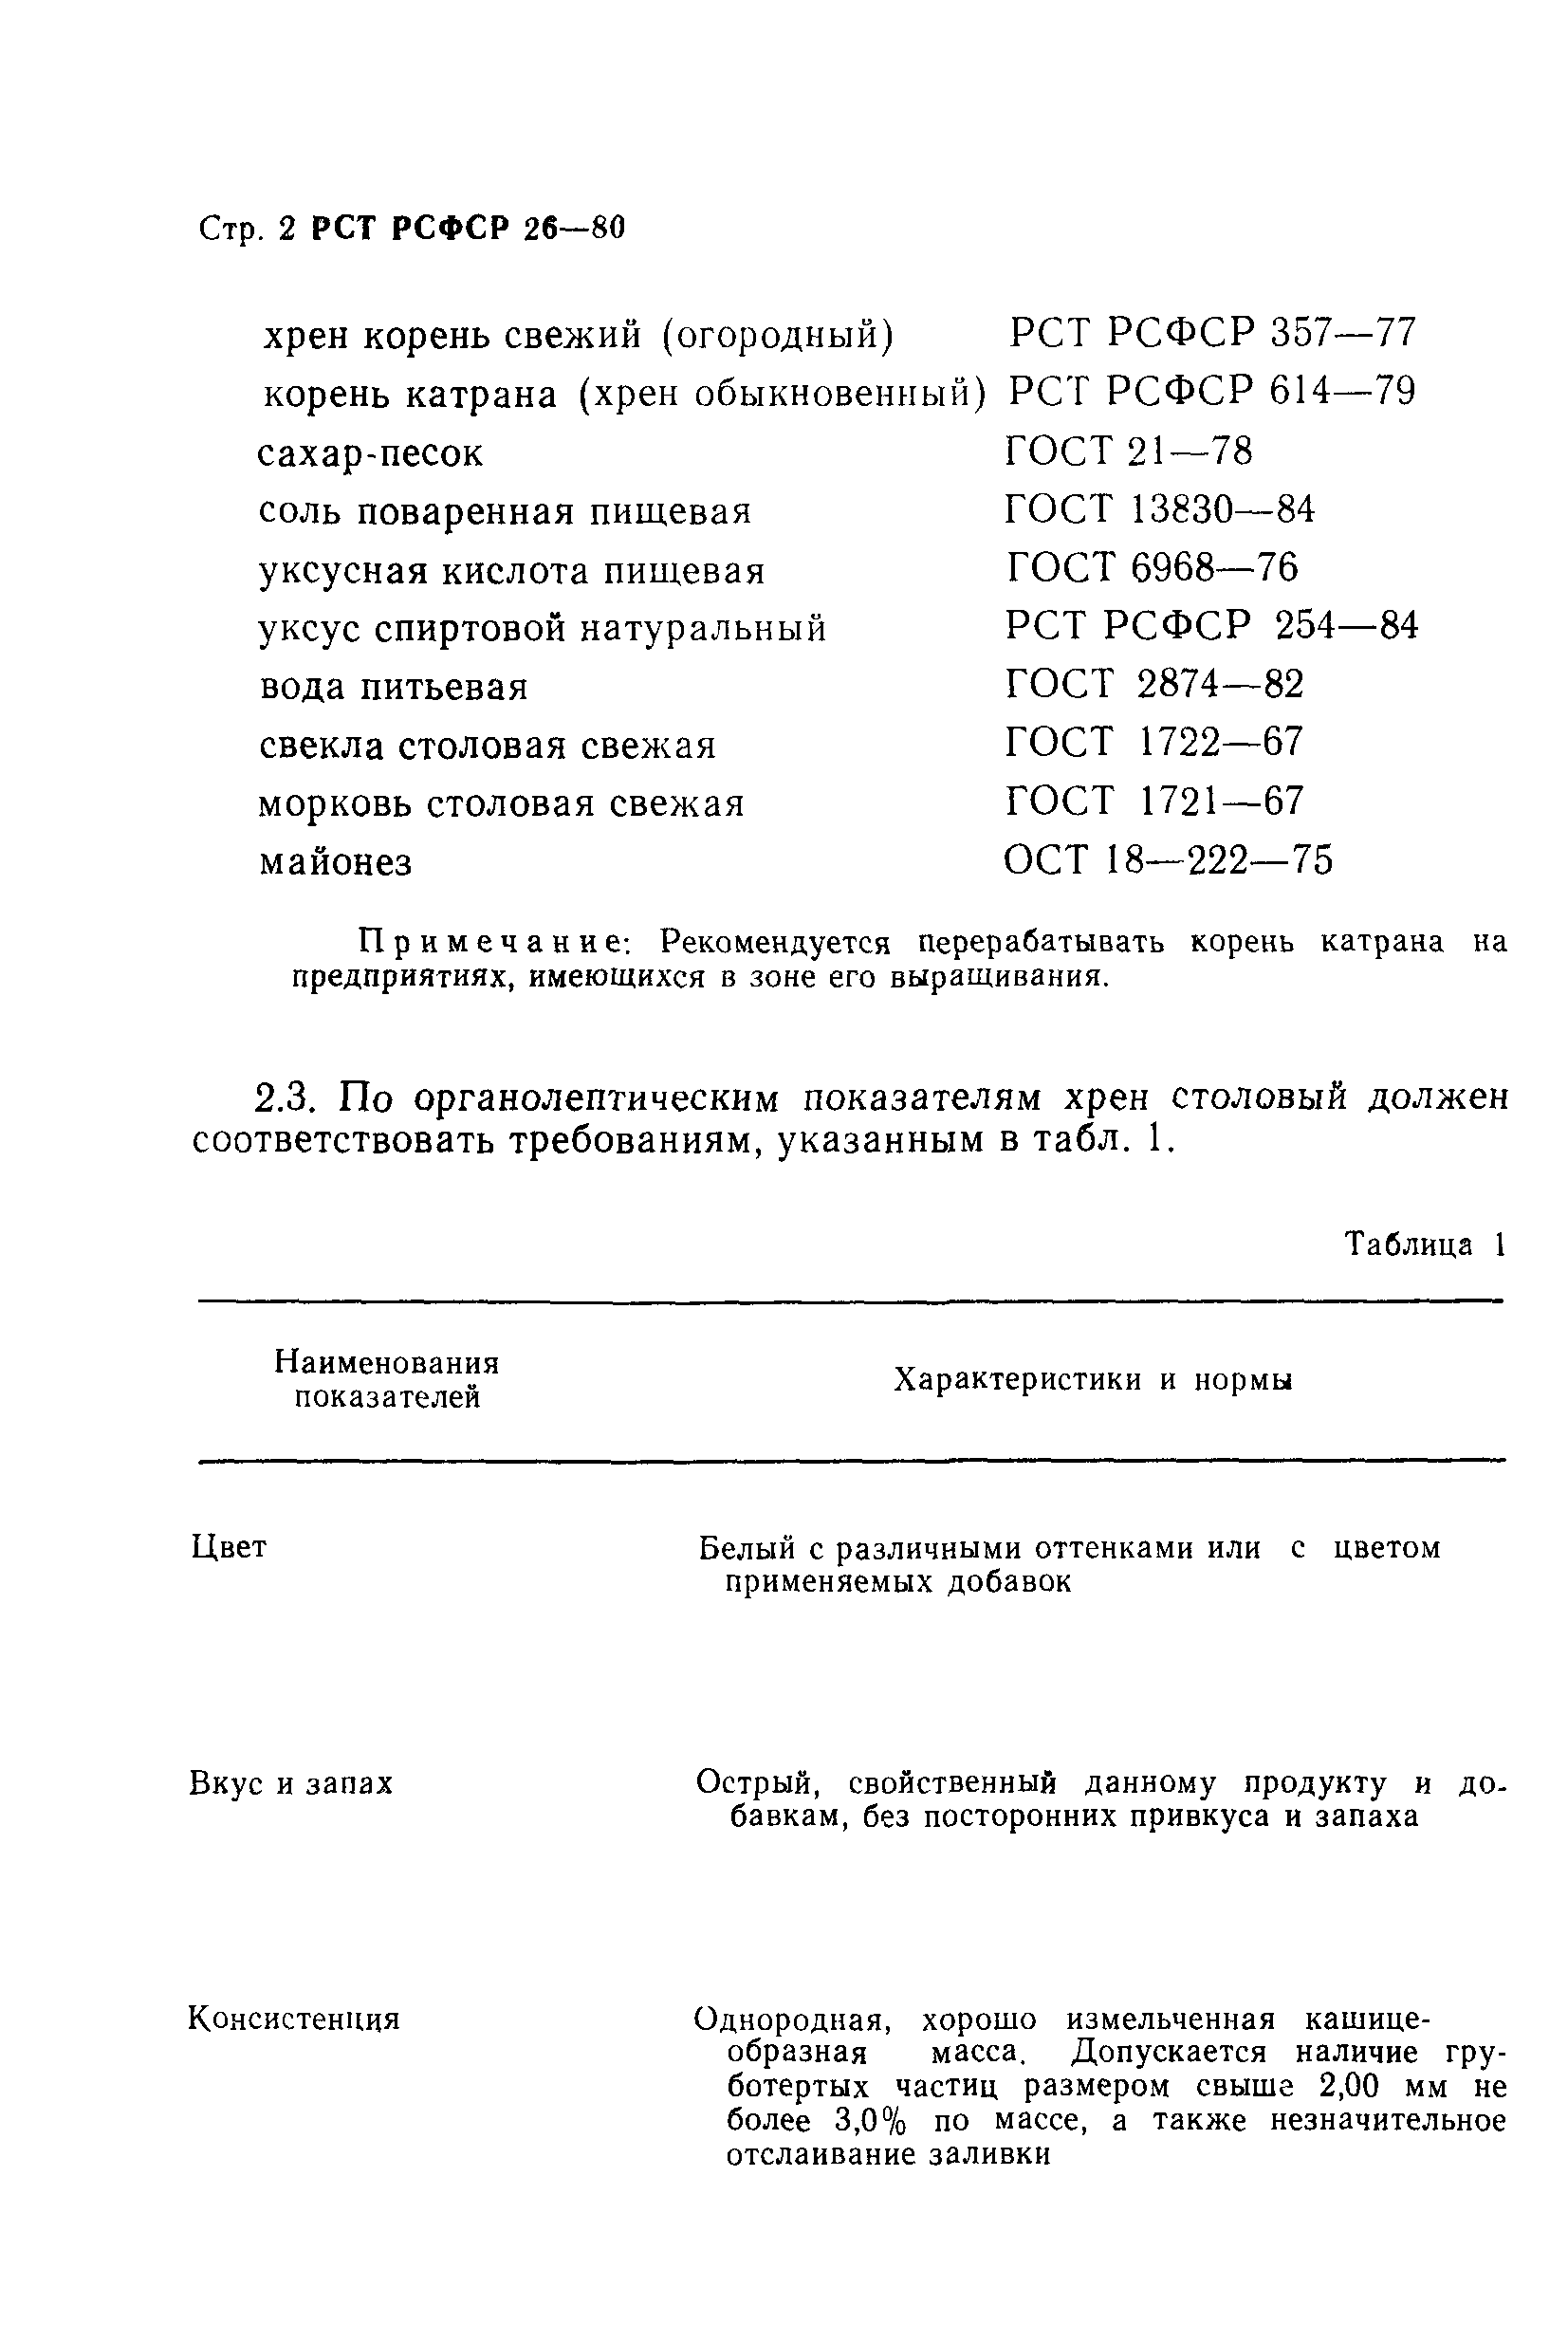 РСТ РСФСР 26-80